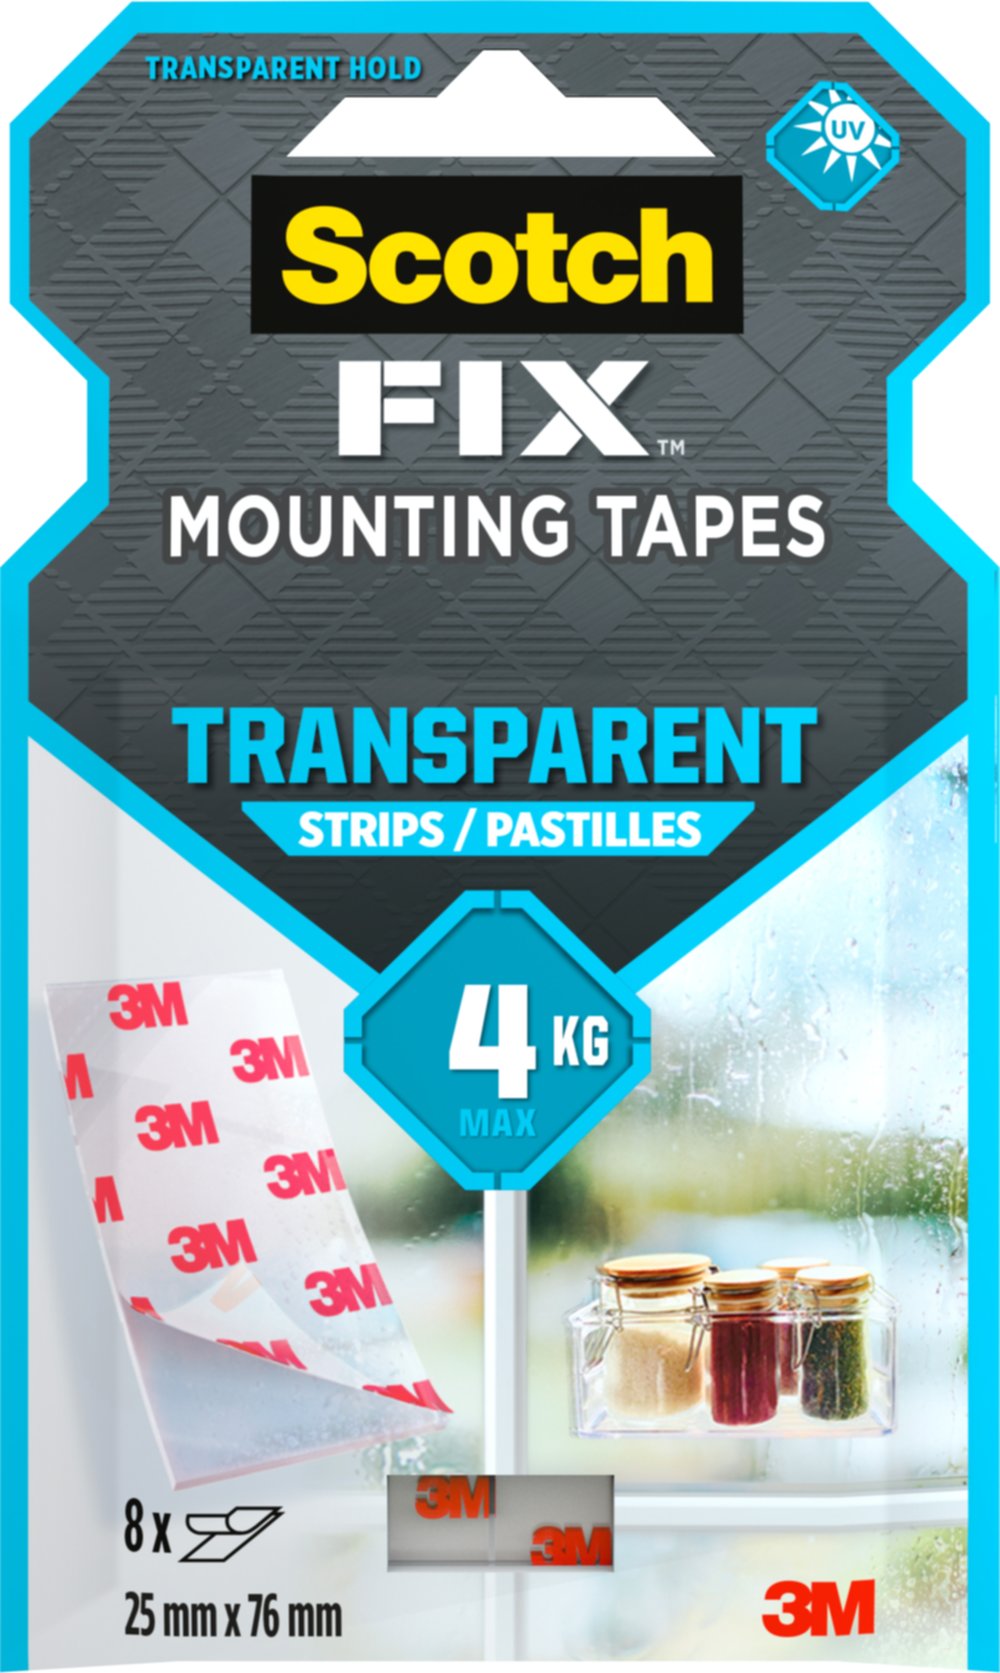 8 pastilles adhésives double face Fix Mounting Tapes 25x76mm transaparent - SCOTCH